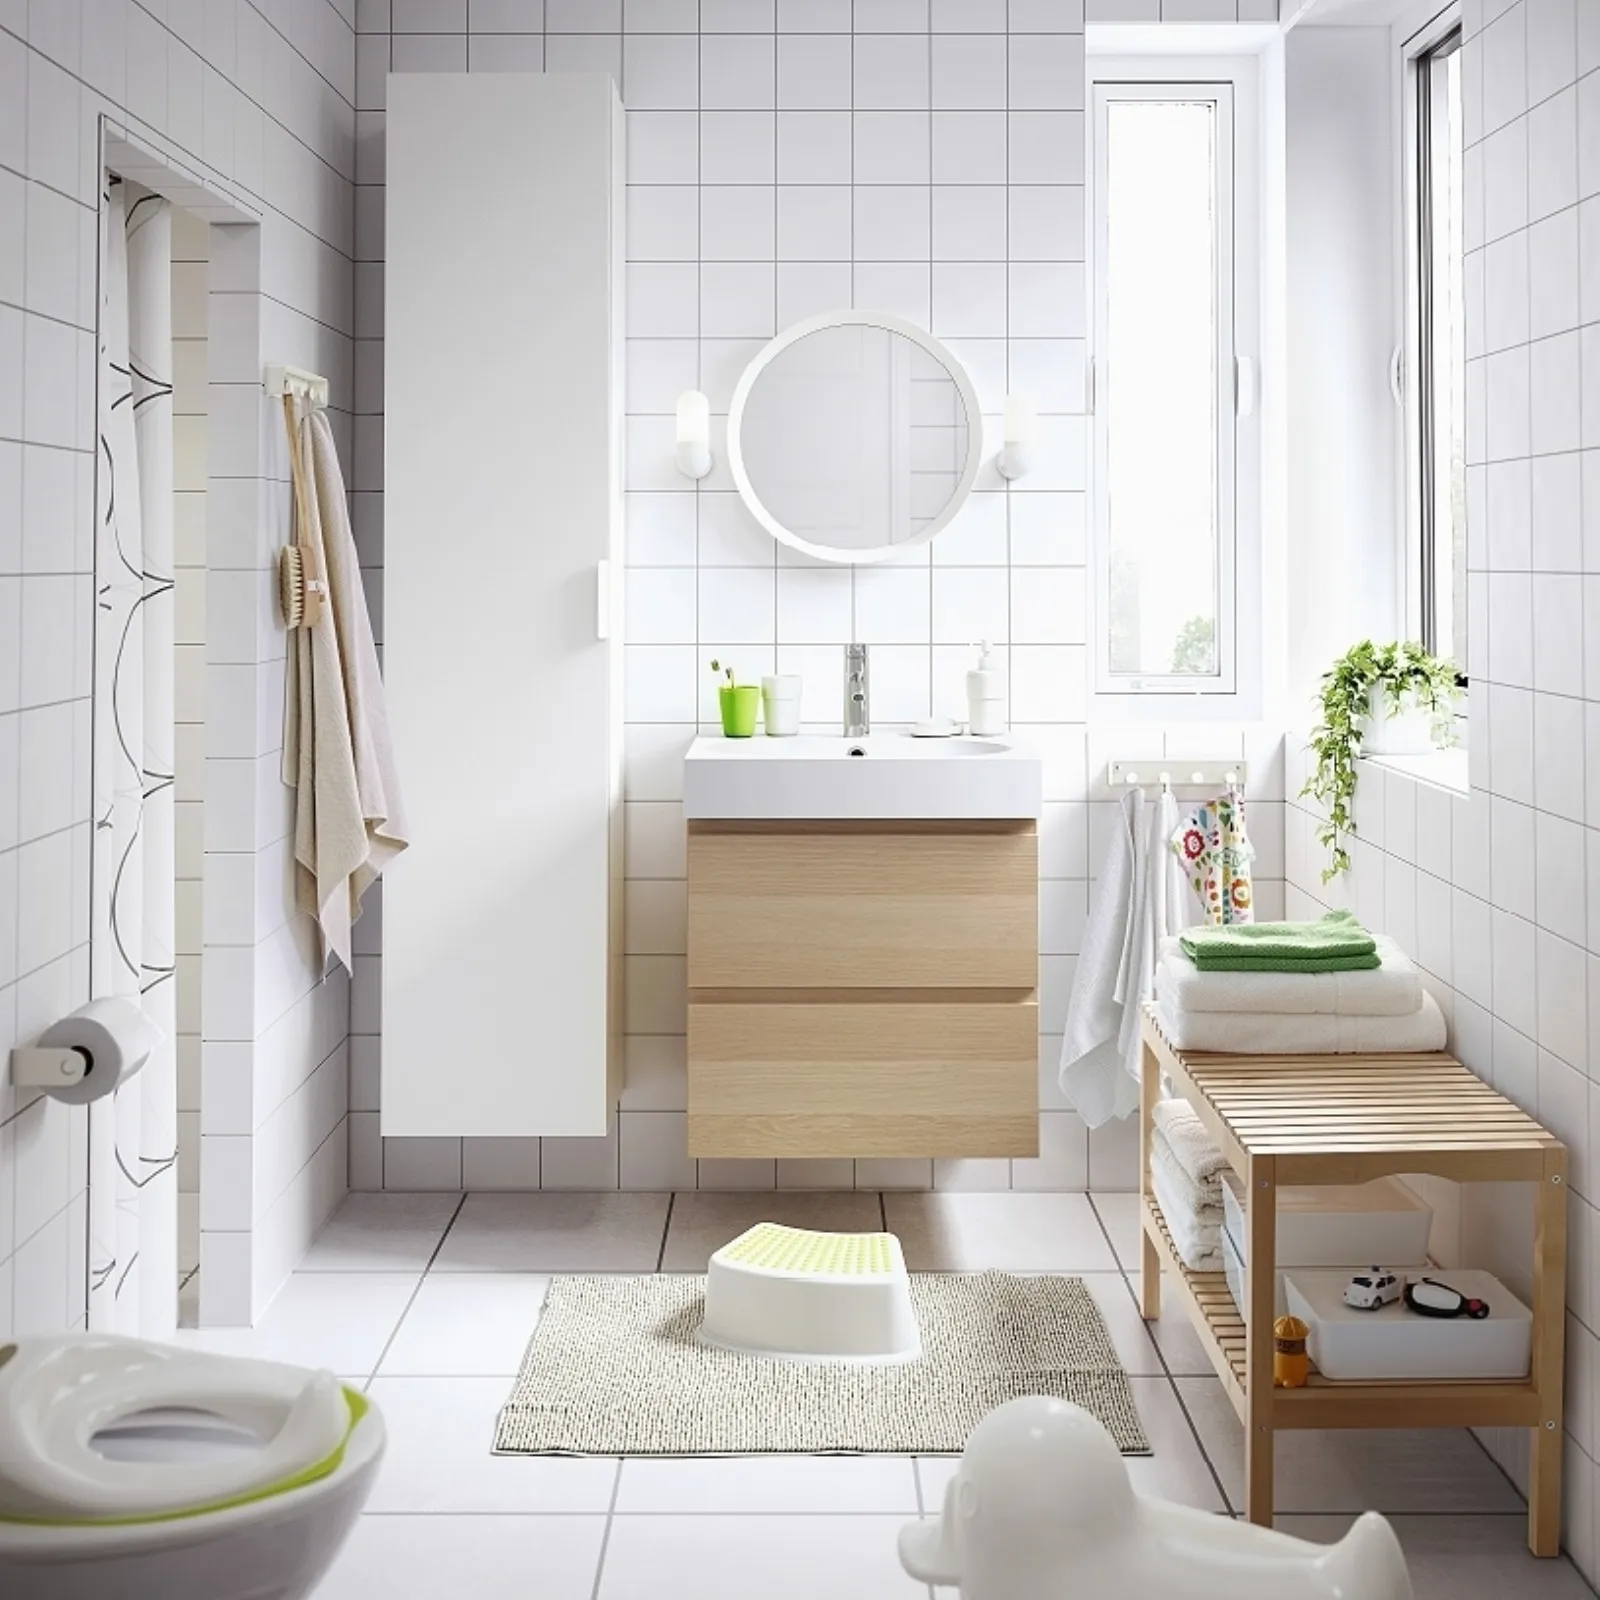 Idee semplici per organizzare lo spazio in bagno - IKEA Svizzera